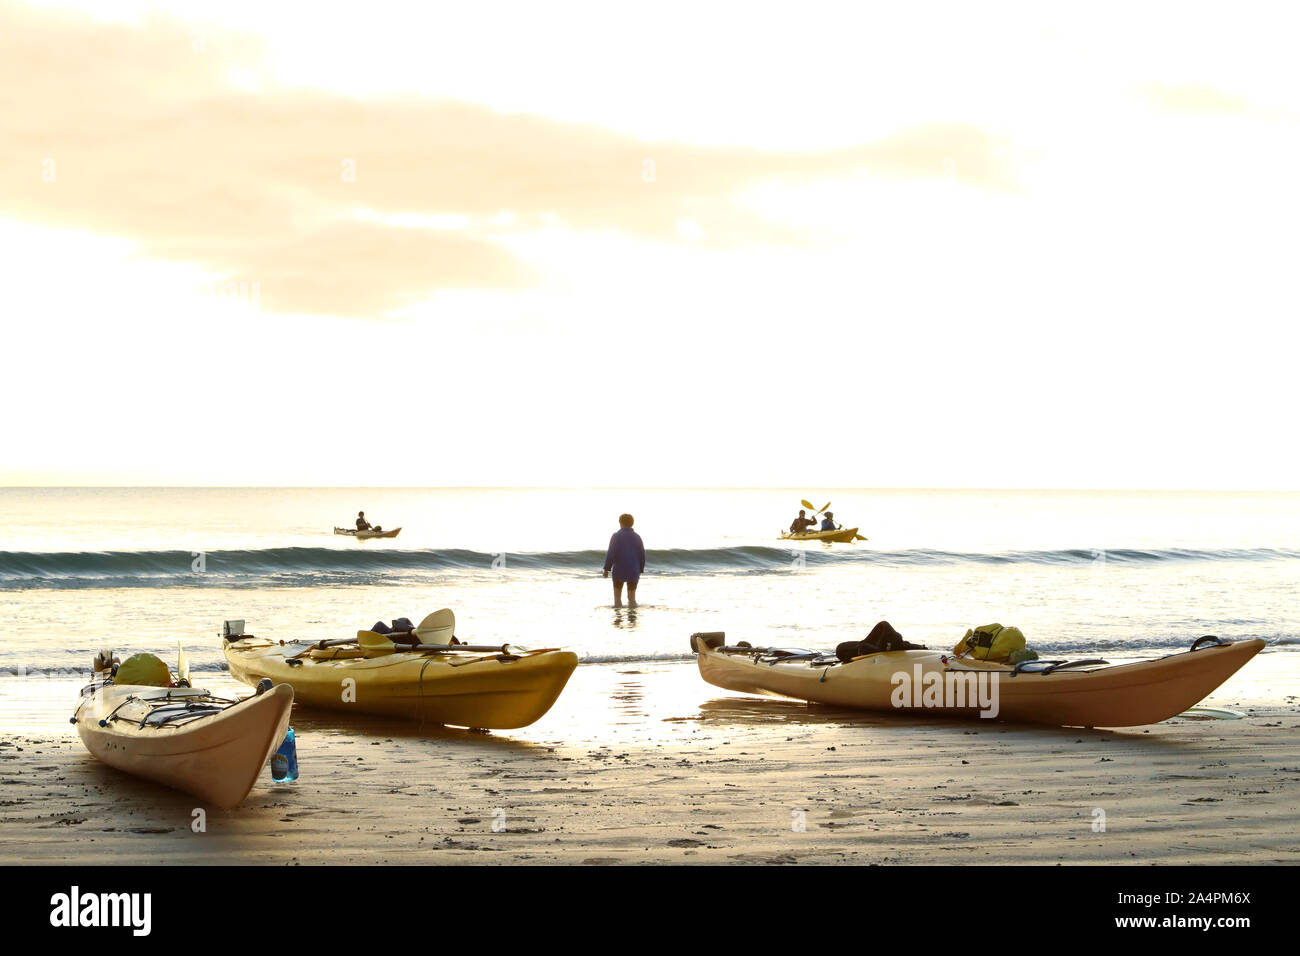 L'écotourisme avec des canoës kayaks de l'océan sur une plage isolée, au coucher du soleil. Petites vagues et respectueux de la pagaie dans les touristes de la côte. Billet d Banque D'Images